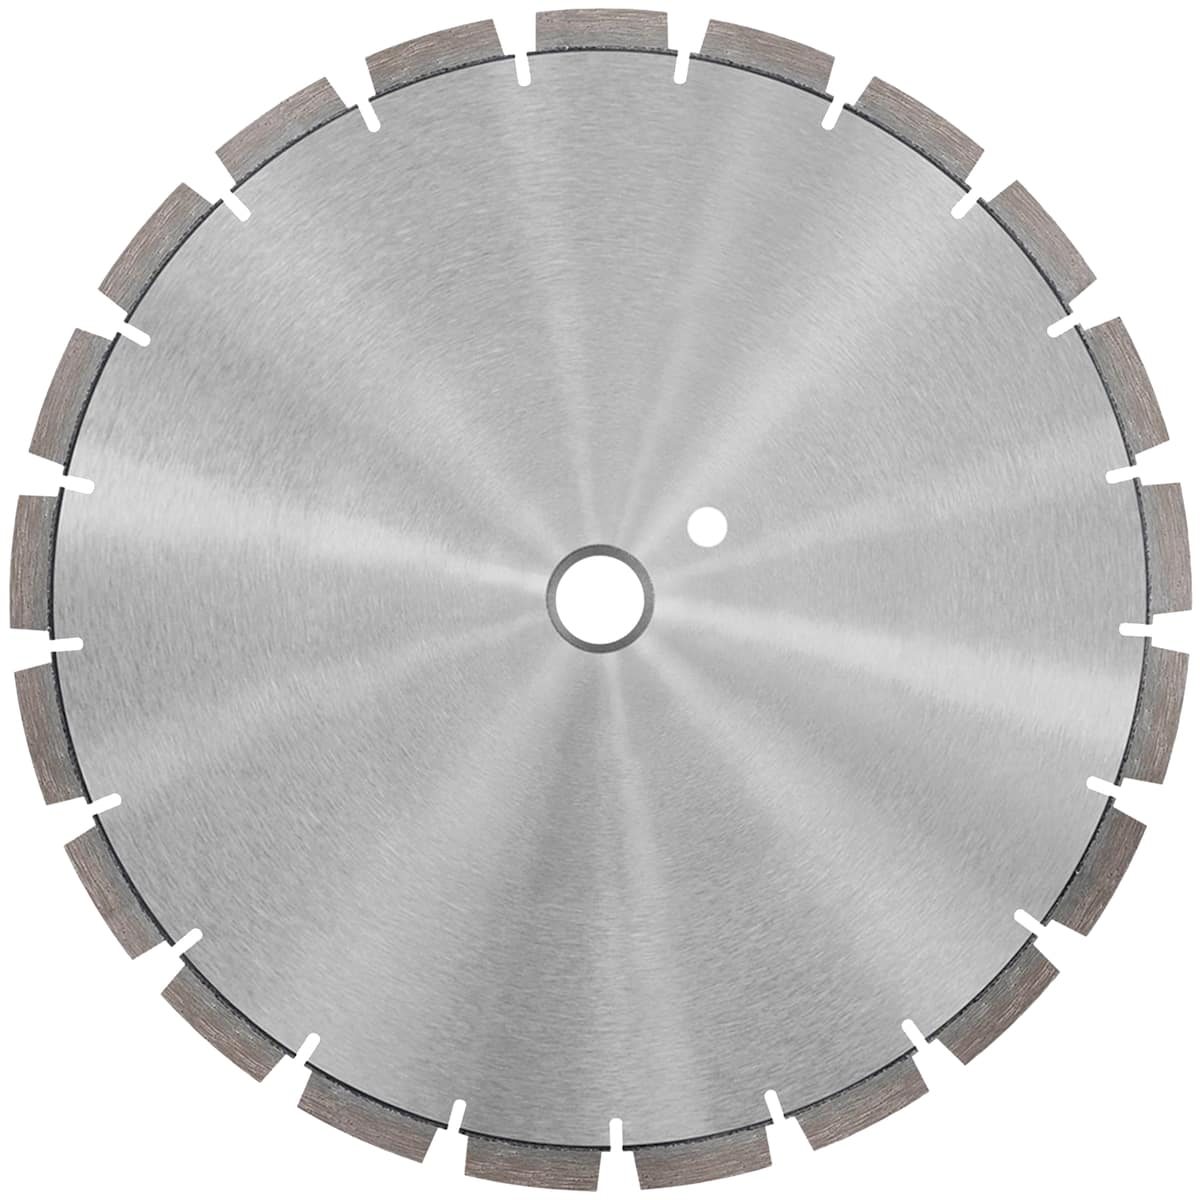 samedia-tools-usa-MASTER-USM-Concrete-Diamond-Blade-24-inch